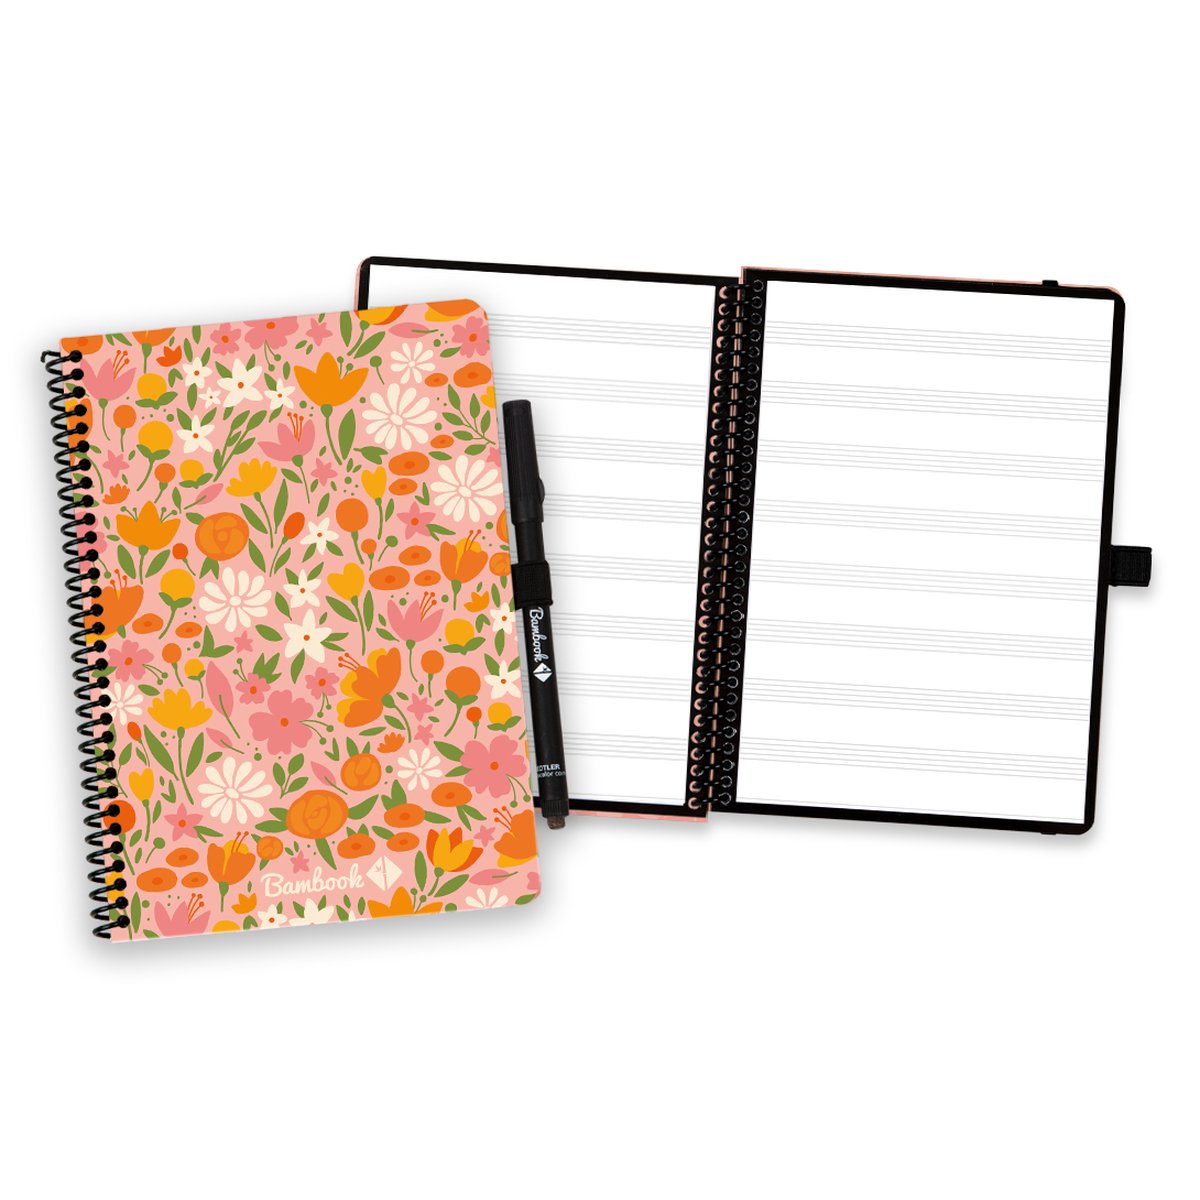 Bambook Floral uitwisbaar notitieboek - Softcover - A5 - Pagina's: Bladmuziek - Duurzaam, herbruikbaar whiteboard schrift - Met 1 gratis stift